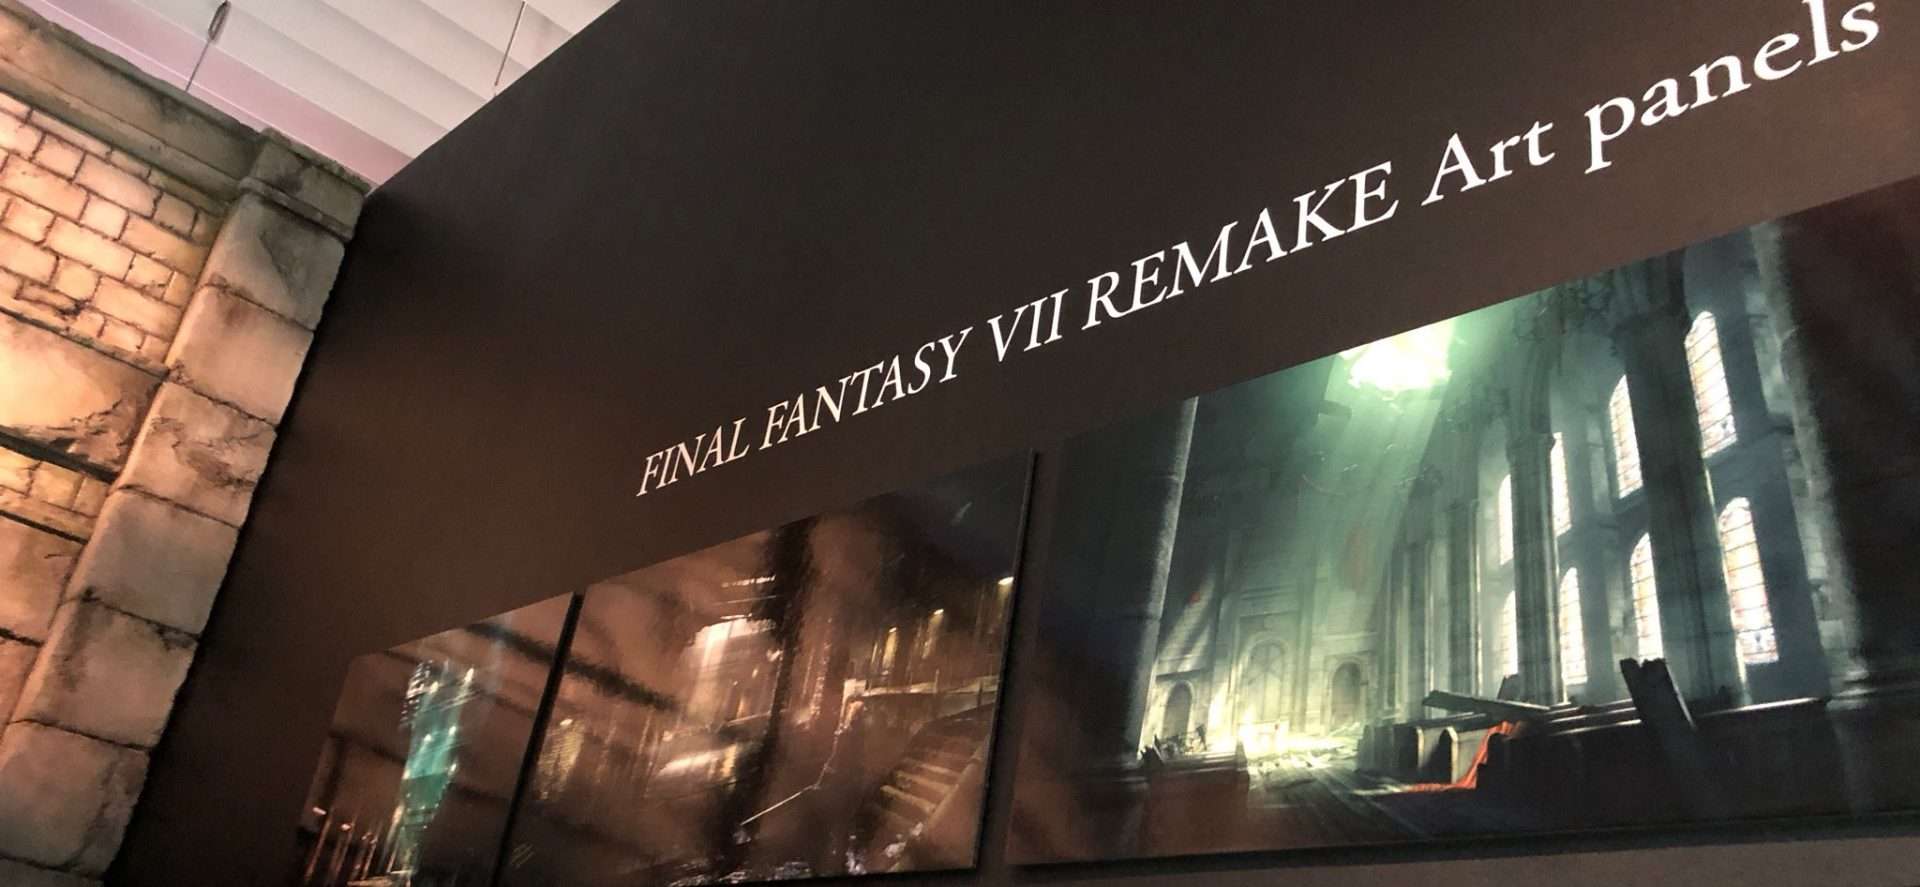 Se muestra el arte de entornos y personajes de Final Fantasy VII Remake